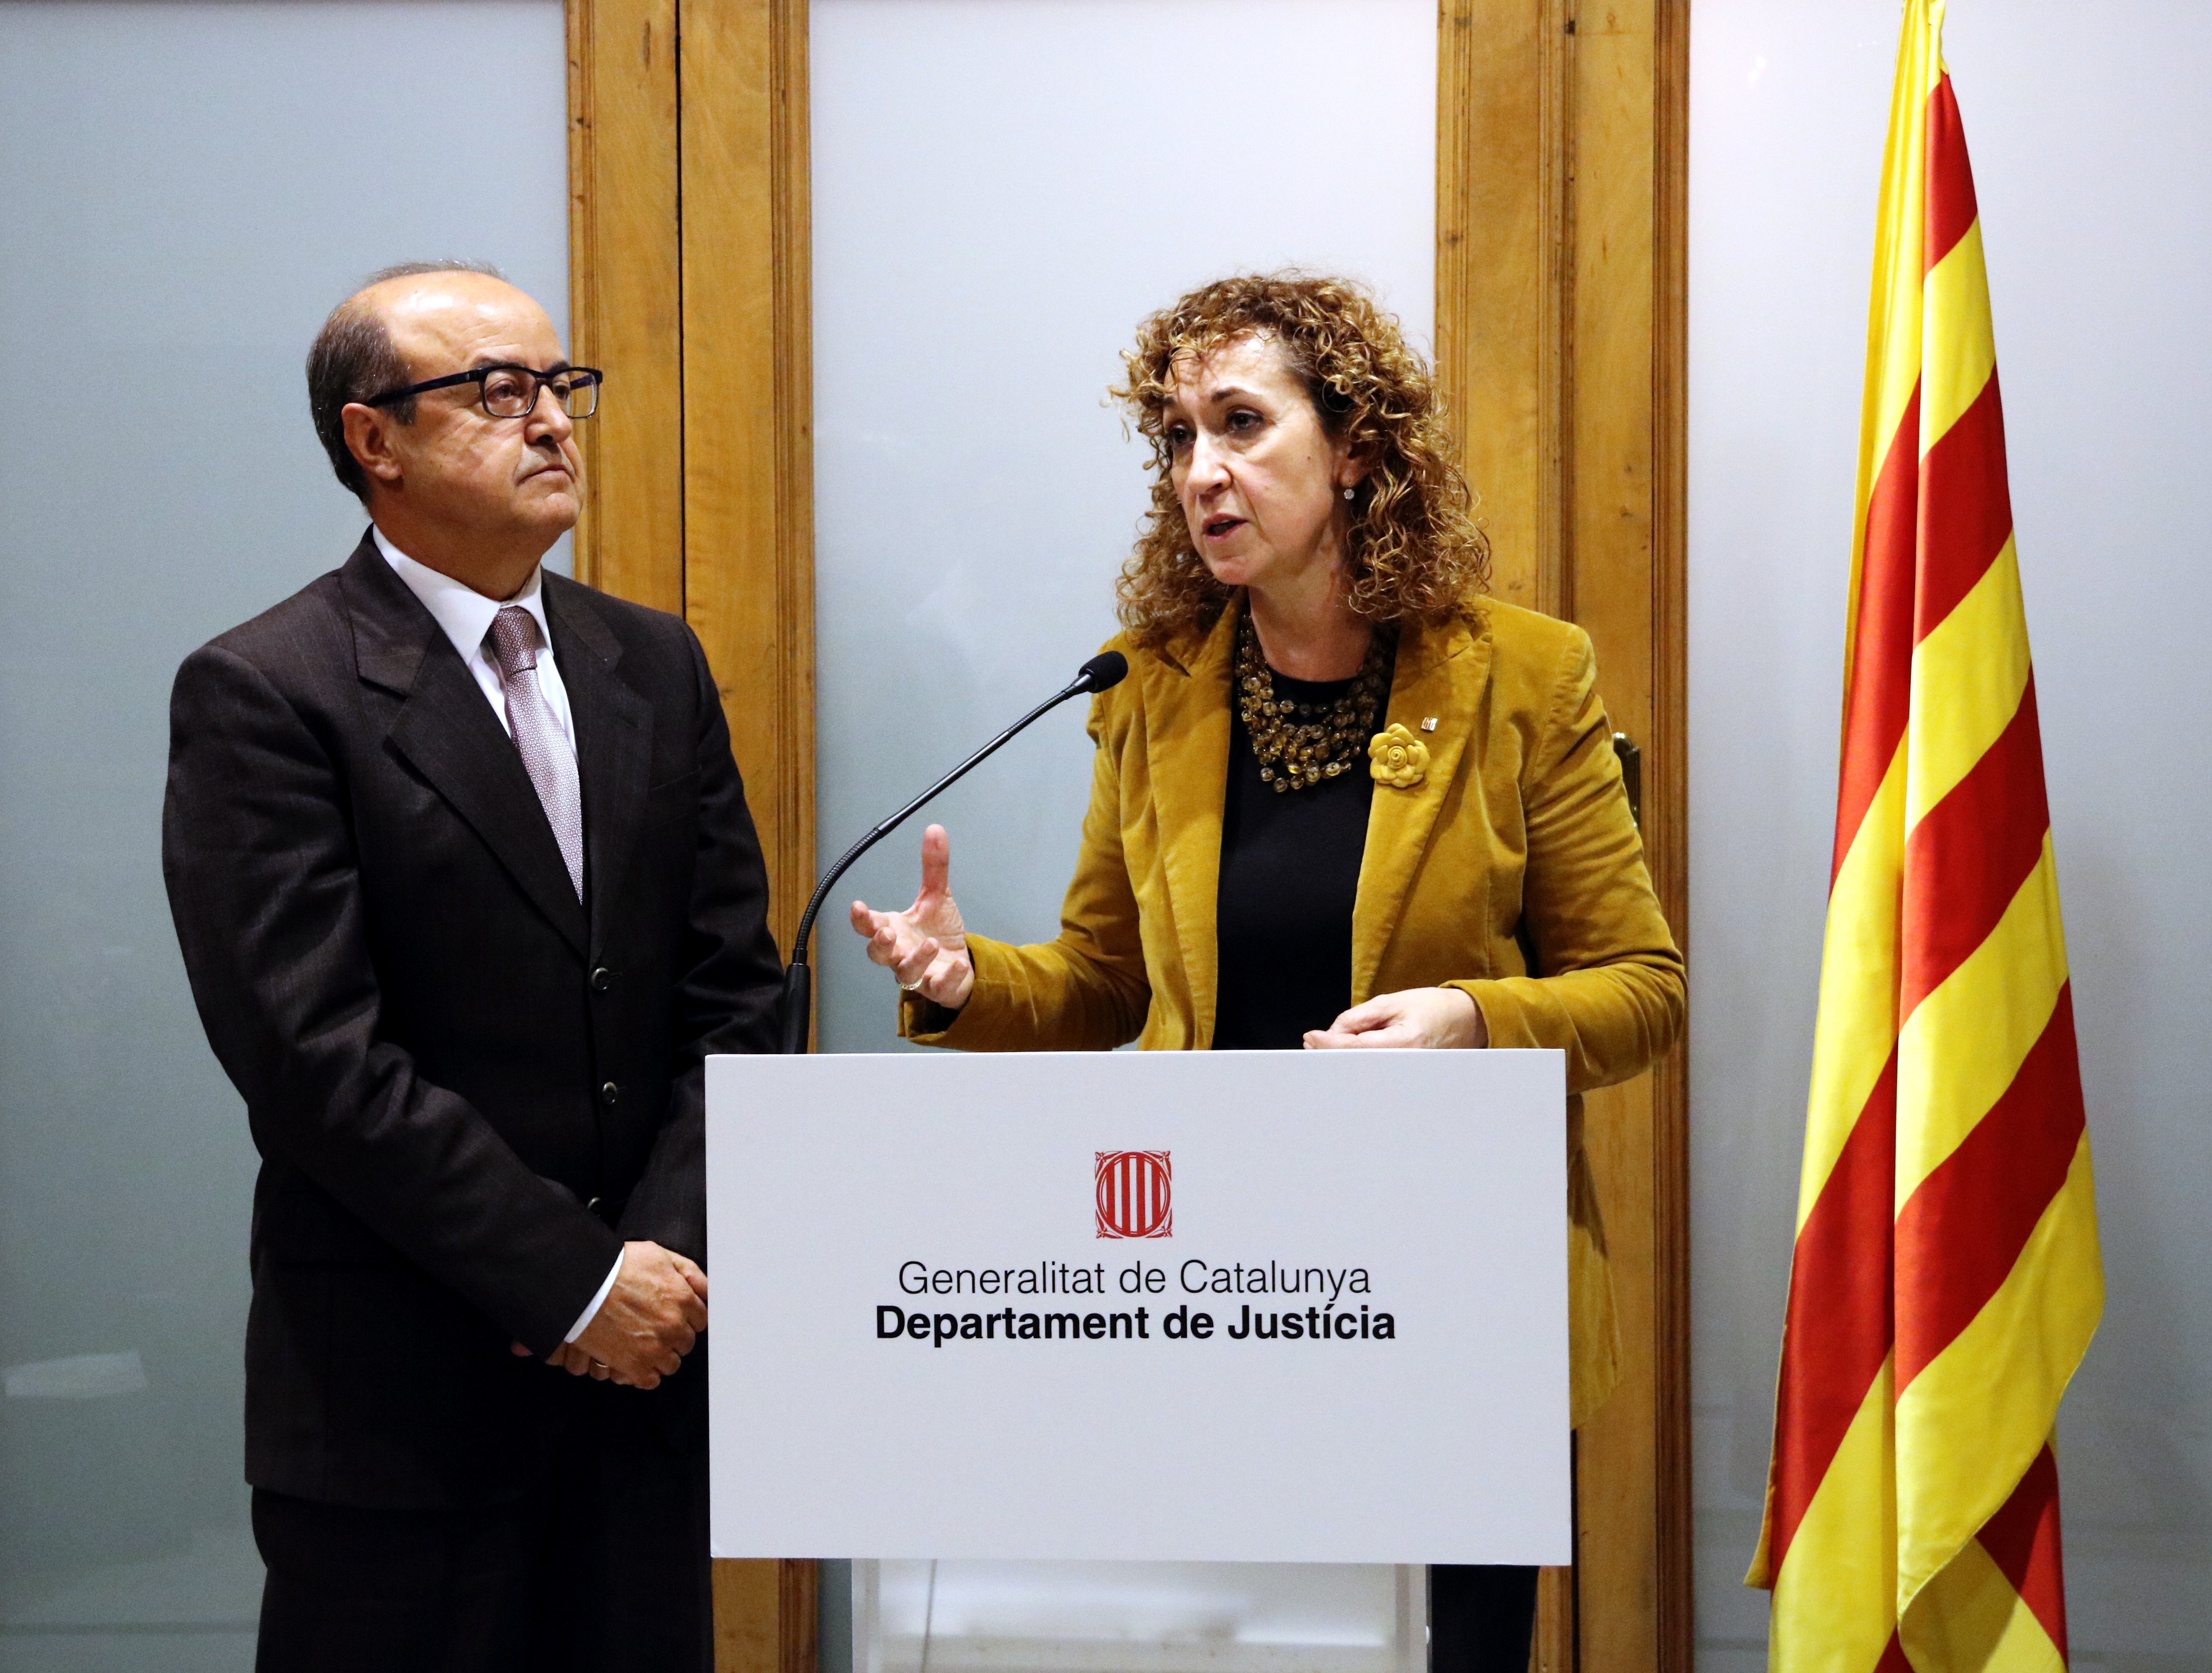 El nuevo juzgado de Barcelona: listo en enero para evitar impunidad en los delitos leves